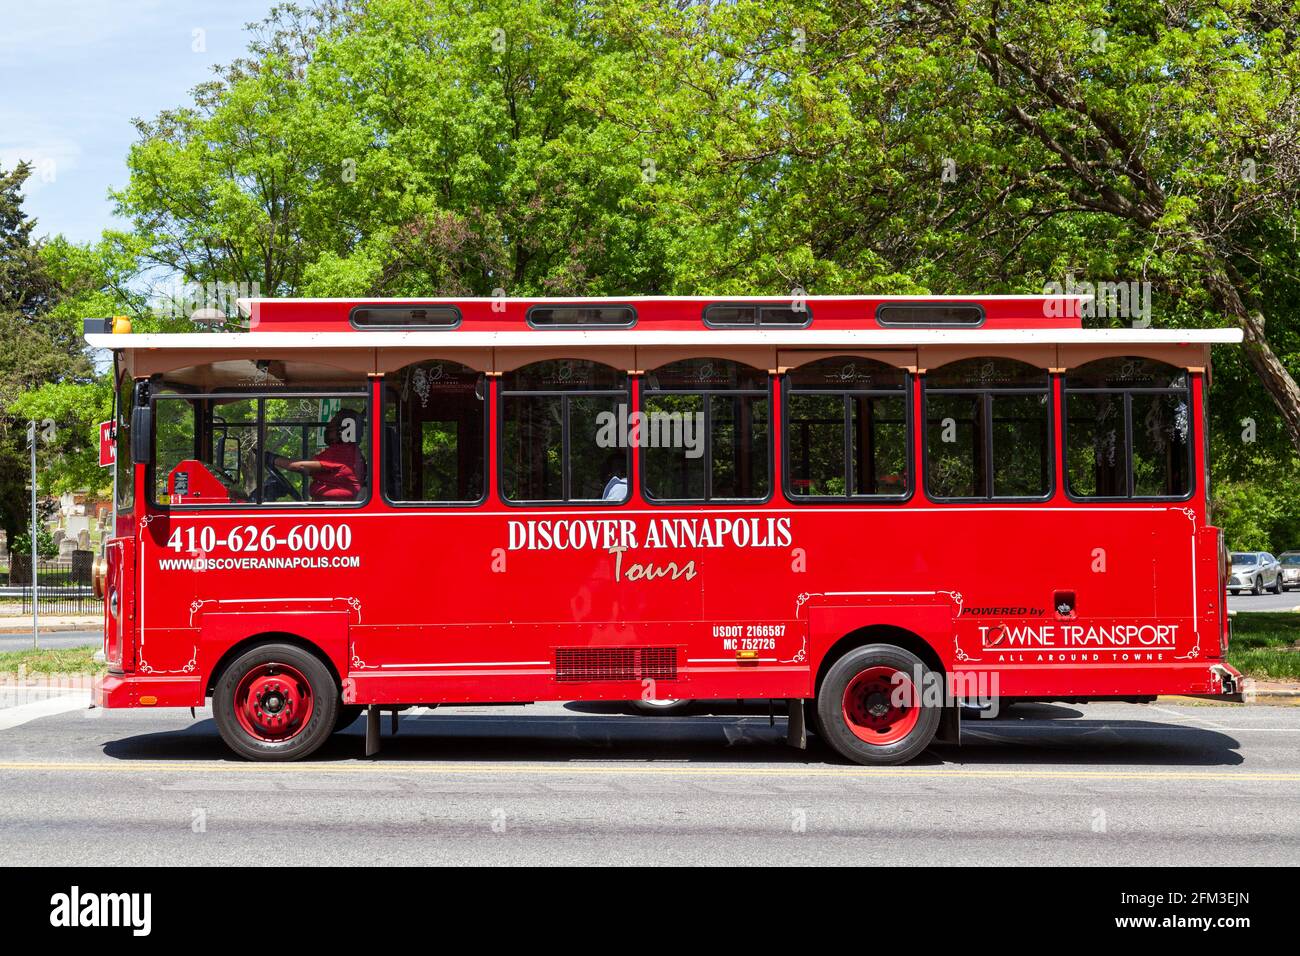 05-02-2021 Annapolis, MD, USA: Ein roter historischer Trolley-Bus, der zur Erkundung von Annapolis City Sightseeing Tours in der Landeshauptstadt von Maryland eingesetzt wird. A t Stockfoto